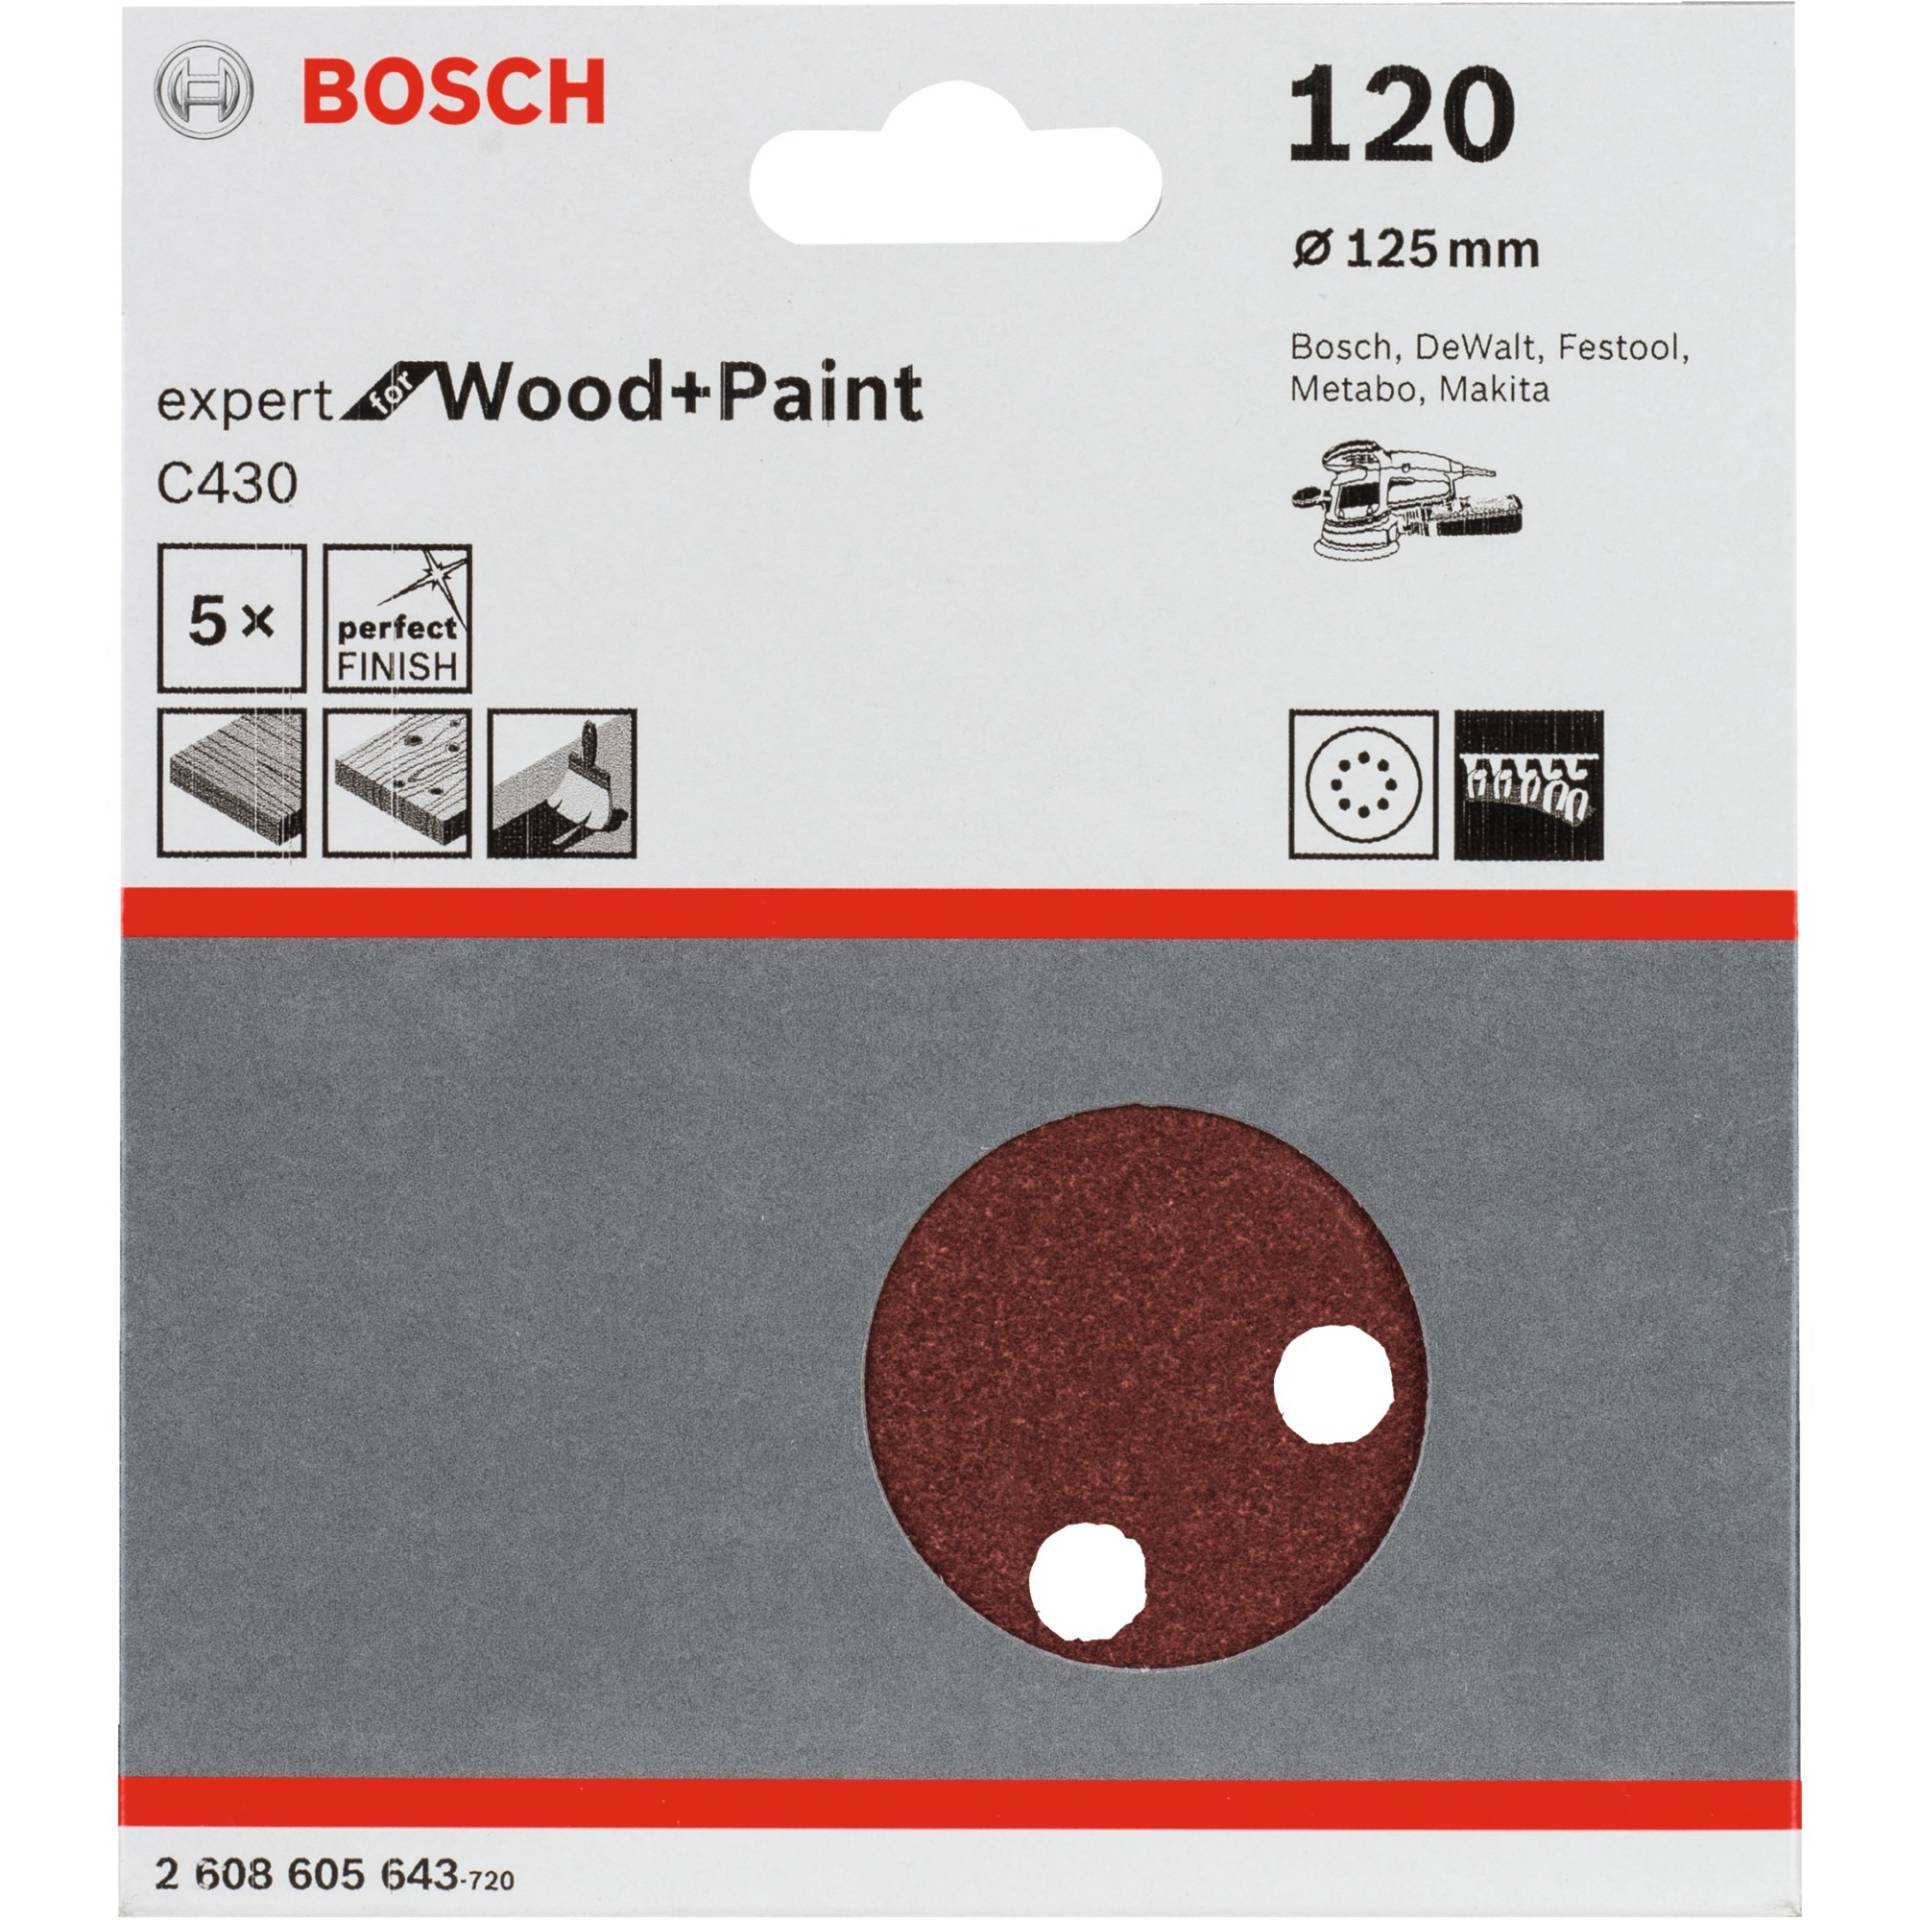 Schleifblatt C430 Expert for Wood and Paint, Ø 125mm, K120 von Bosch